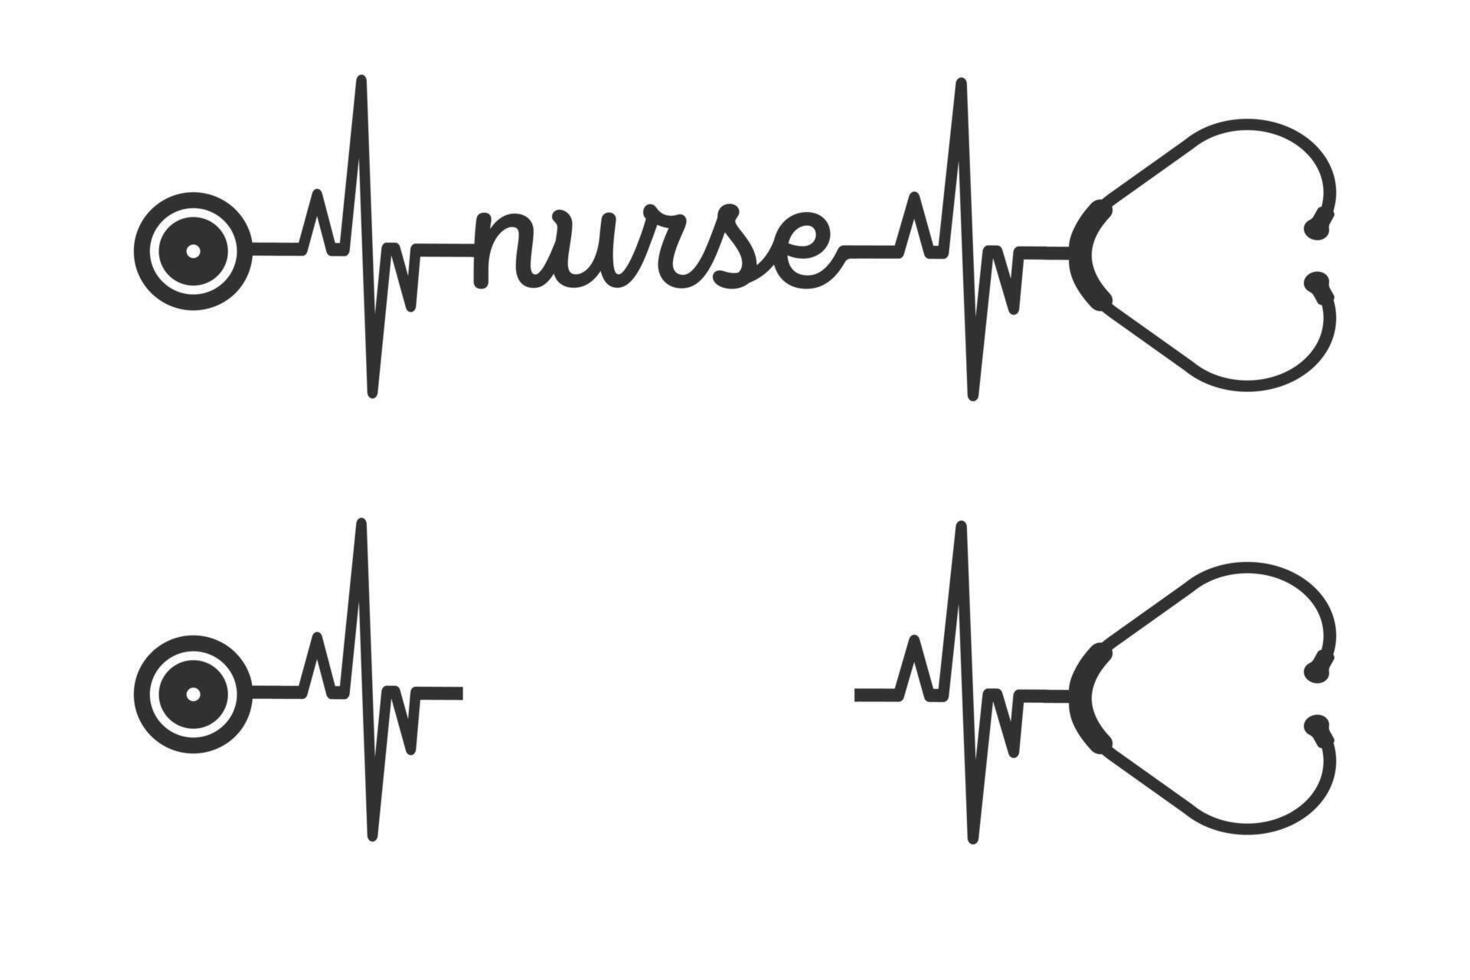 Nurse Typography Design Vector, Medical Stethoscope with Nurse typography, Nurse Typography with Stethoscope Vector Illustration, Stethoscope heartbeat, Nurse typography with nurse cap